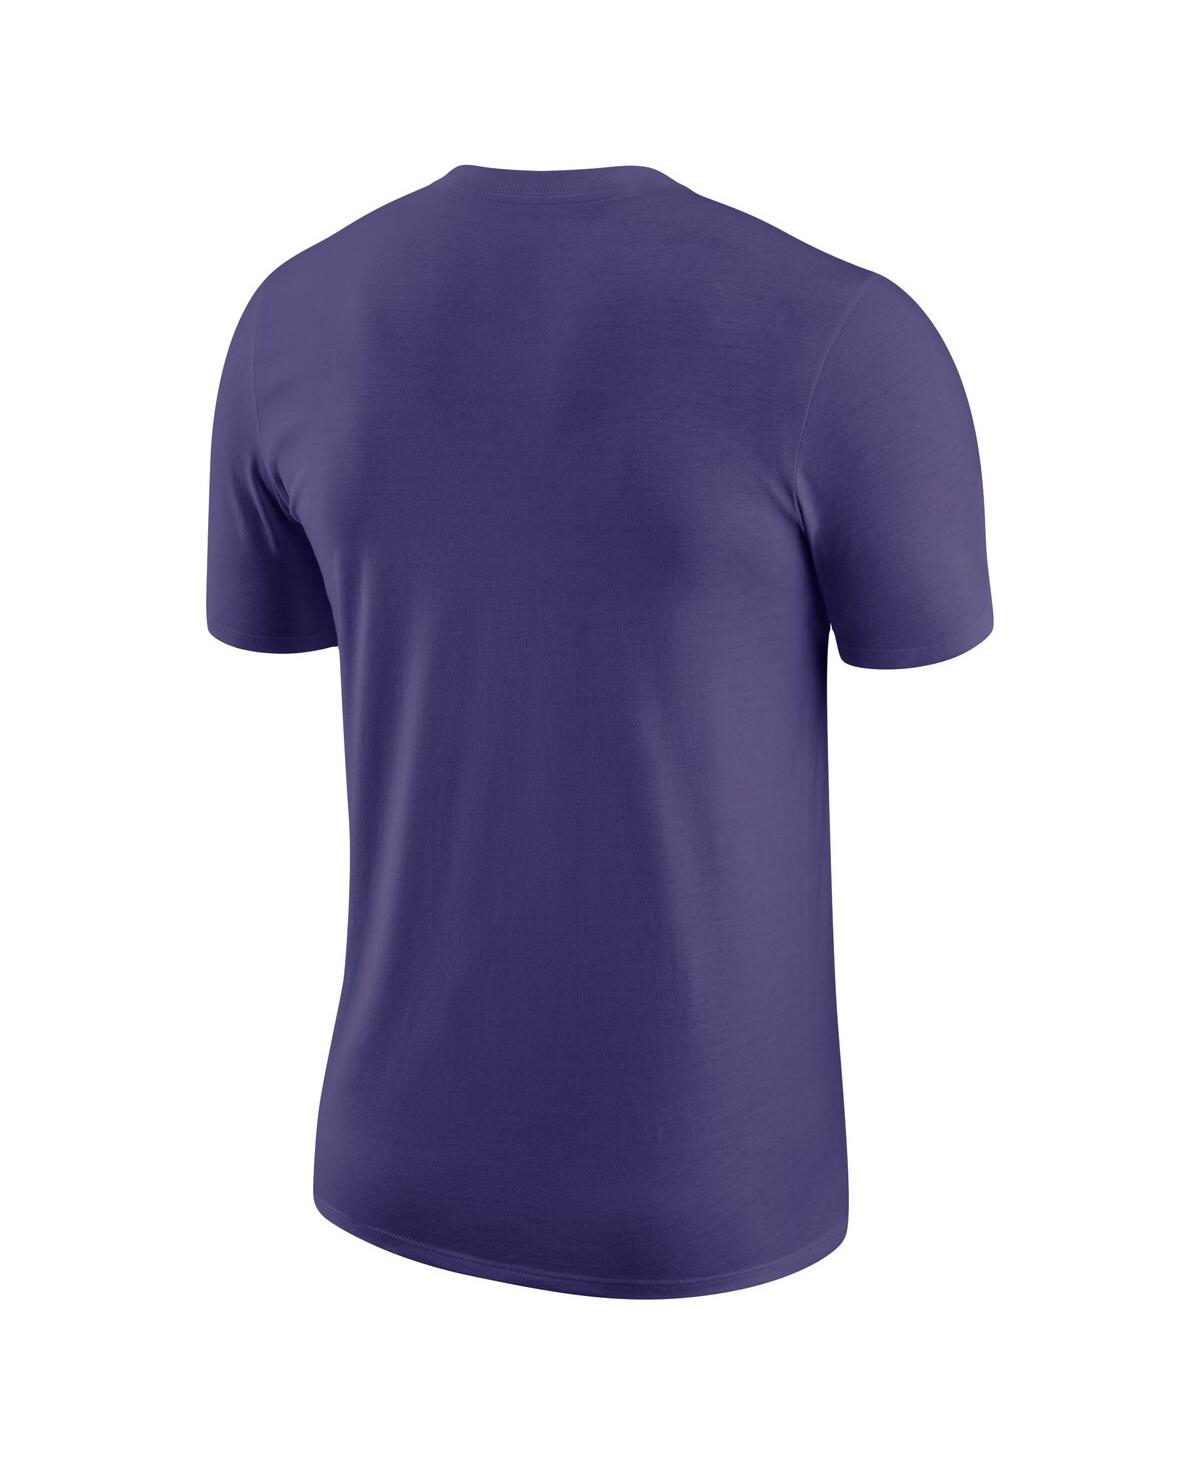 Shop Nike Men's  Purple Phoenix Suns Just Do It T-shirt